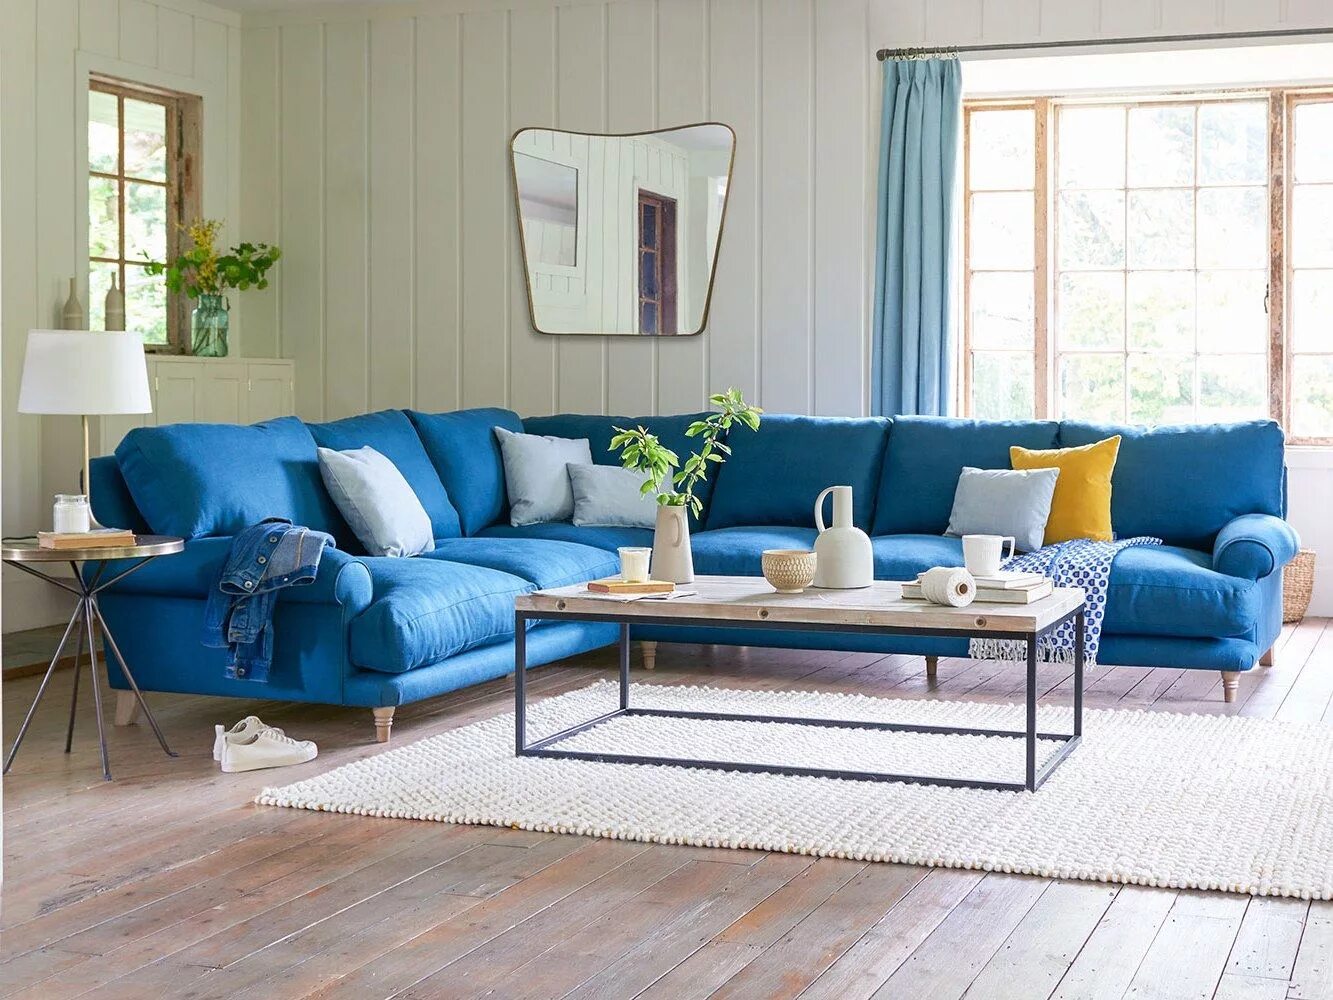 Синий диван. Голубой диван. Голубой угловой диван в интерьере. Диван василькового цвета в интерьере. Синий угловой диван в интерьере гостиной.